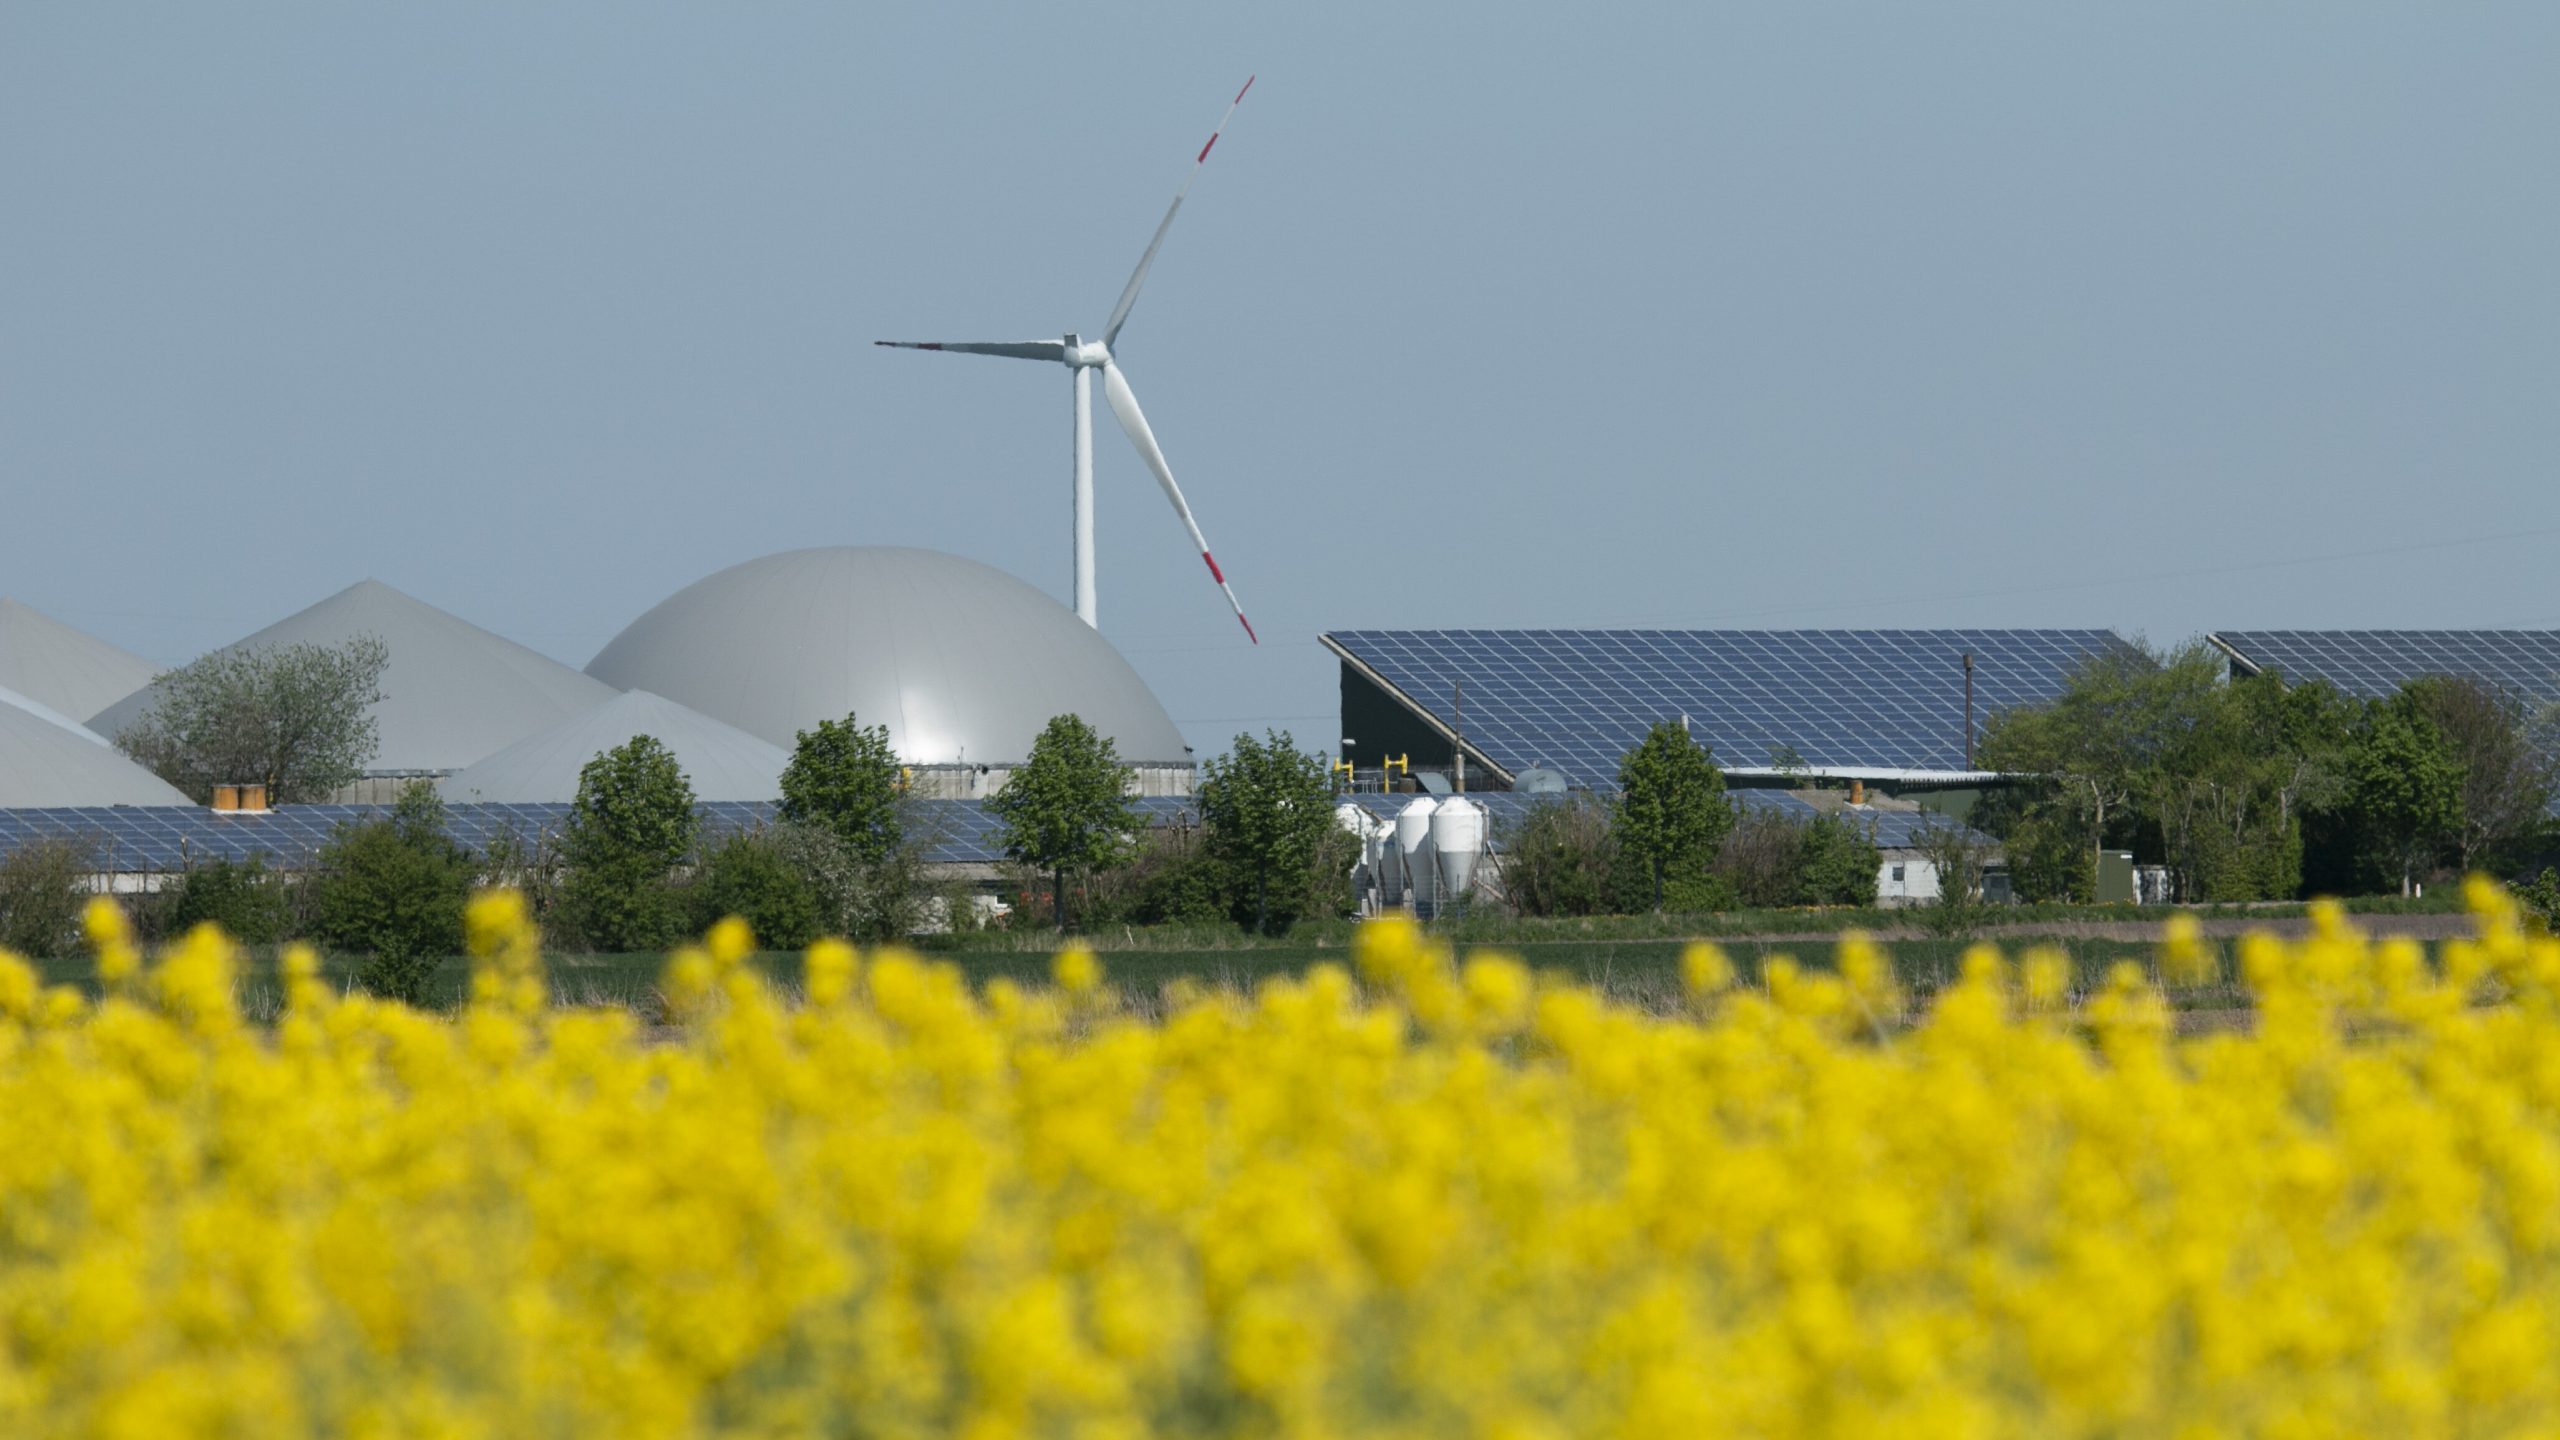 Ein Rapsfeld in Nordfriesland. Dahinter sind Gebäude mit Photovoltaikanlagen, Biogasanlagen und eine Windkraftanlage.